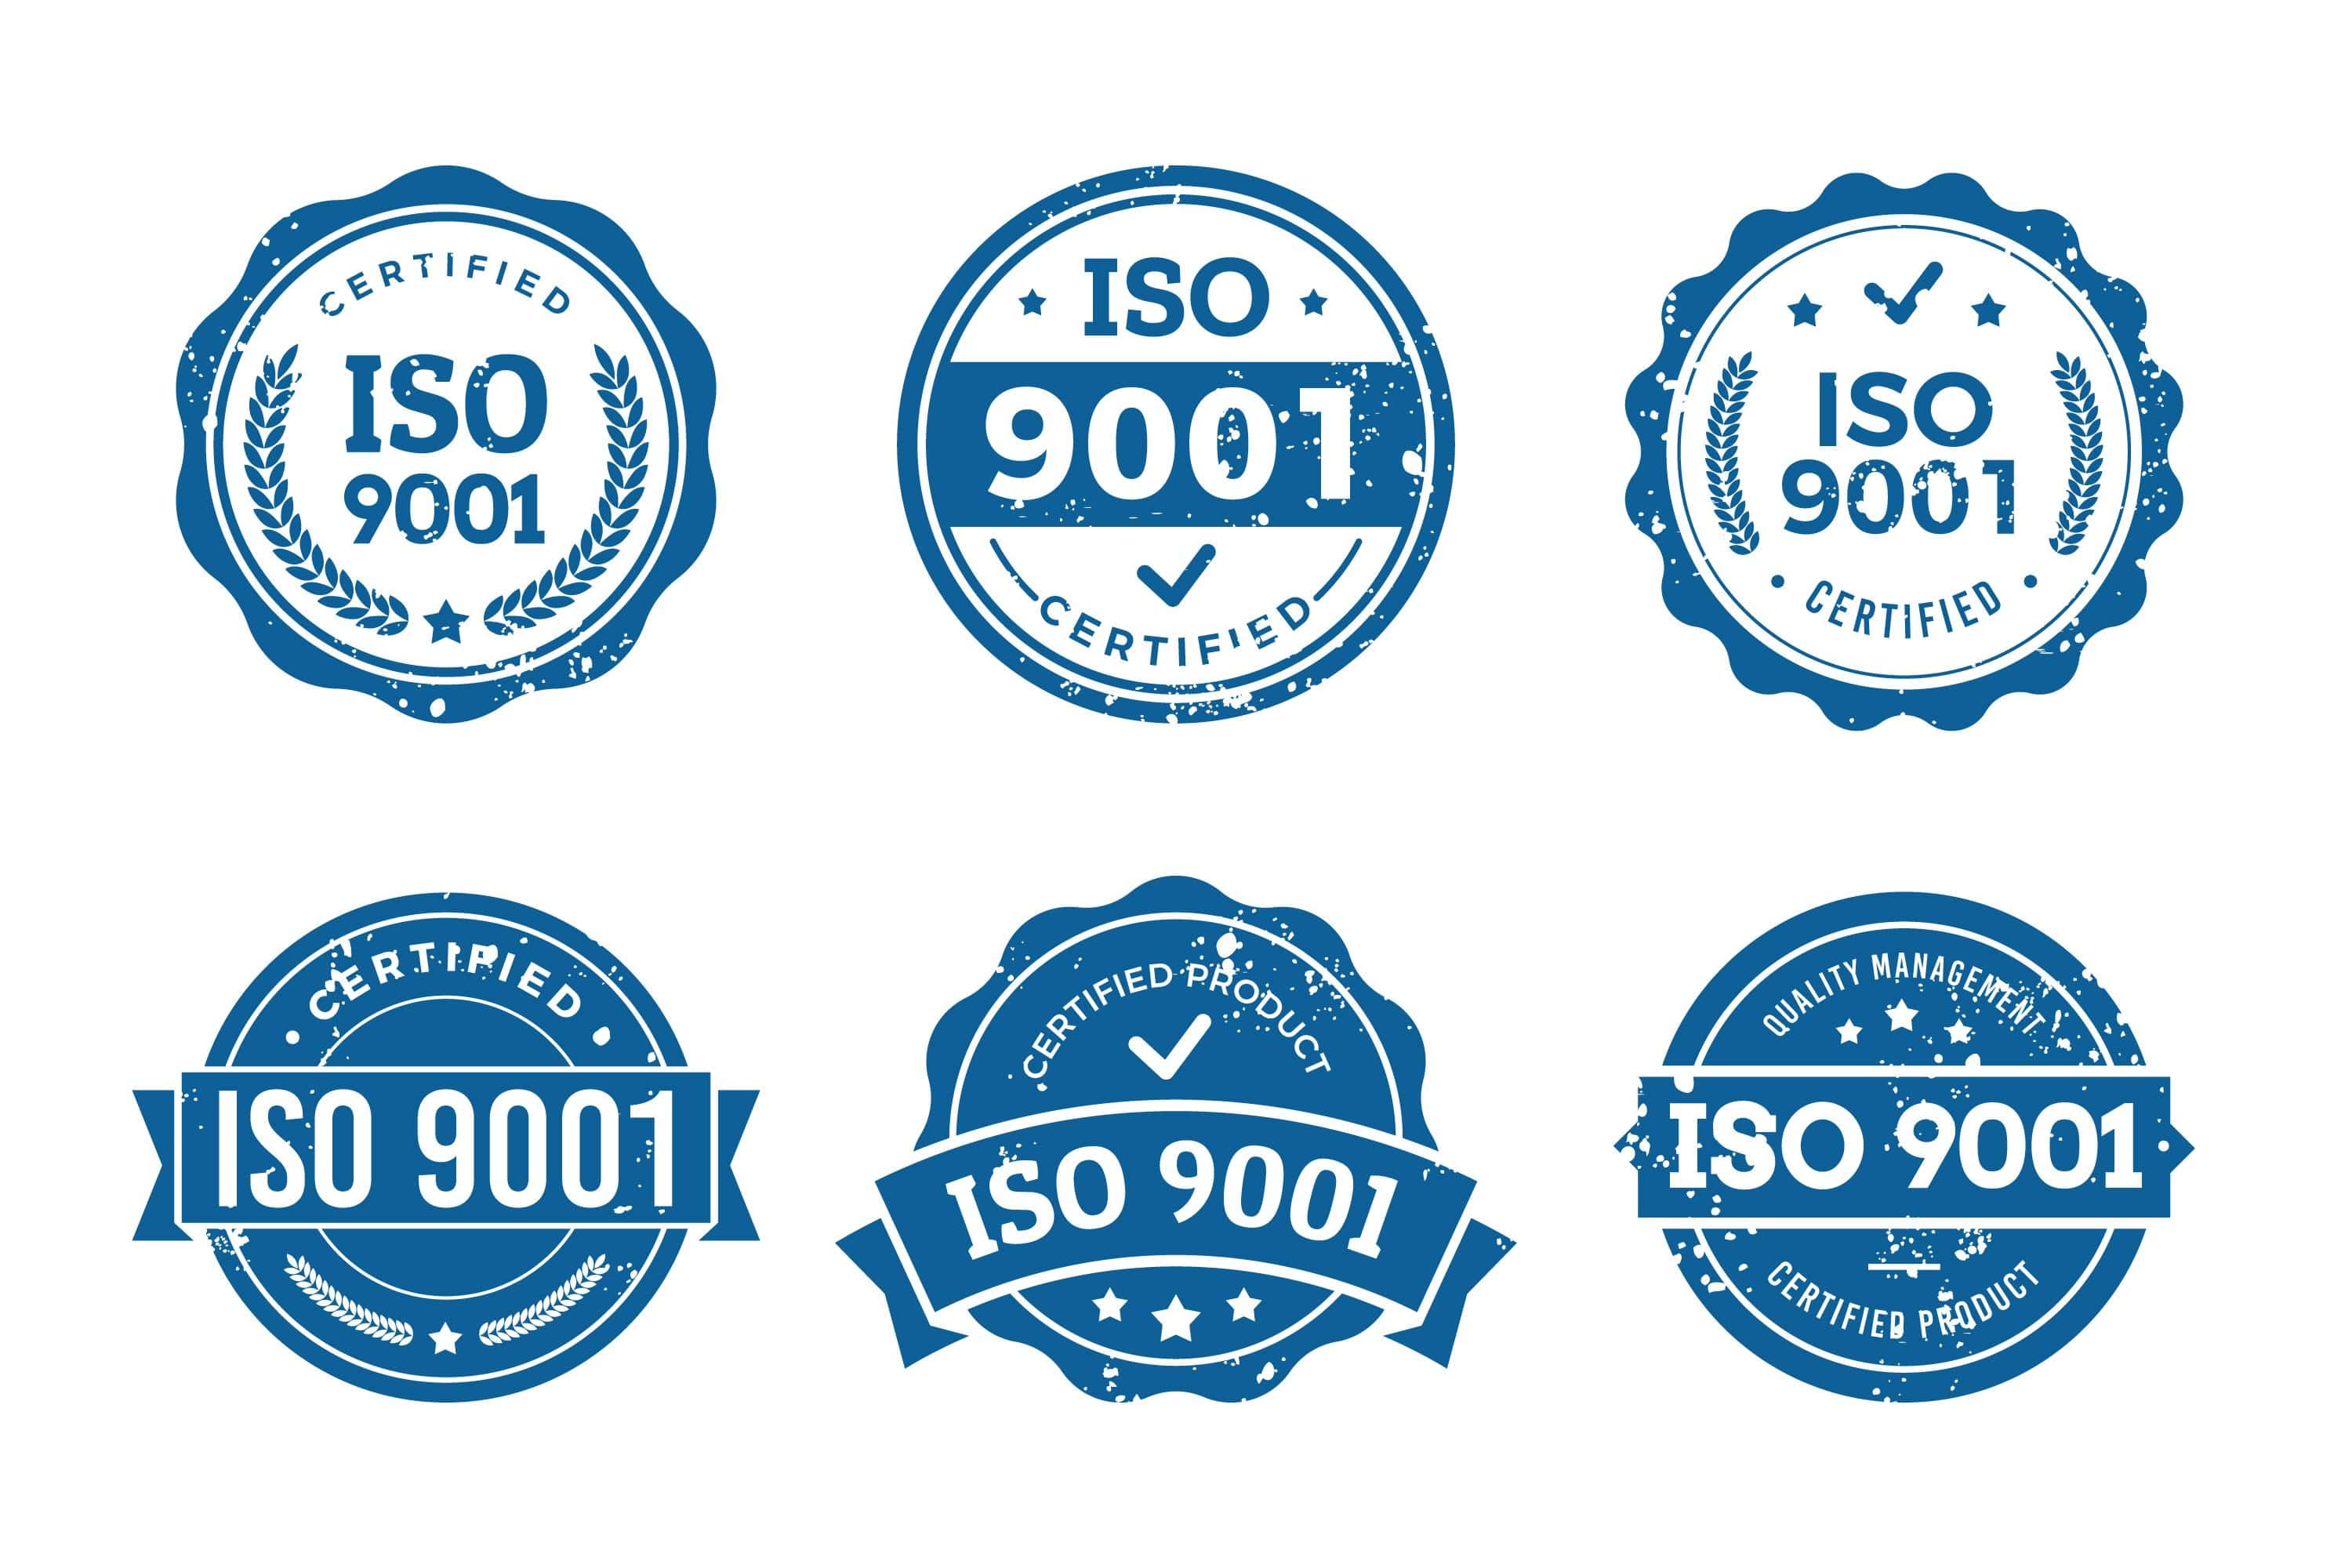 ISO9001 คือ มาตรฐานระบบบริหารงานคุณภาพที่เป็นที่ยอมรับในระดับสากล